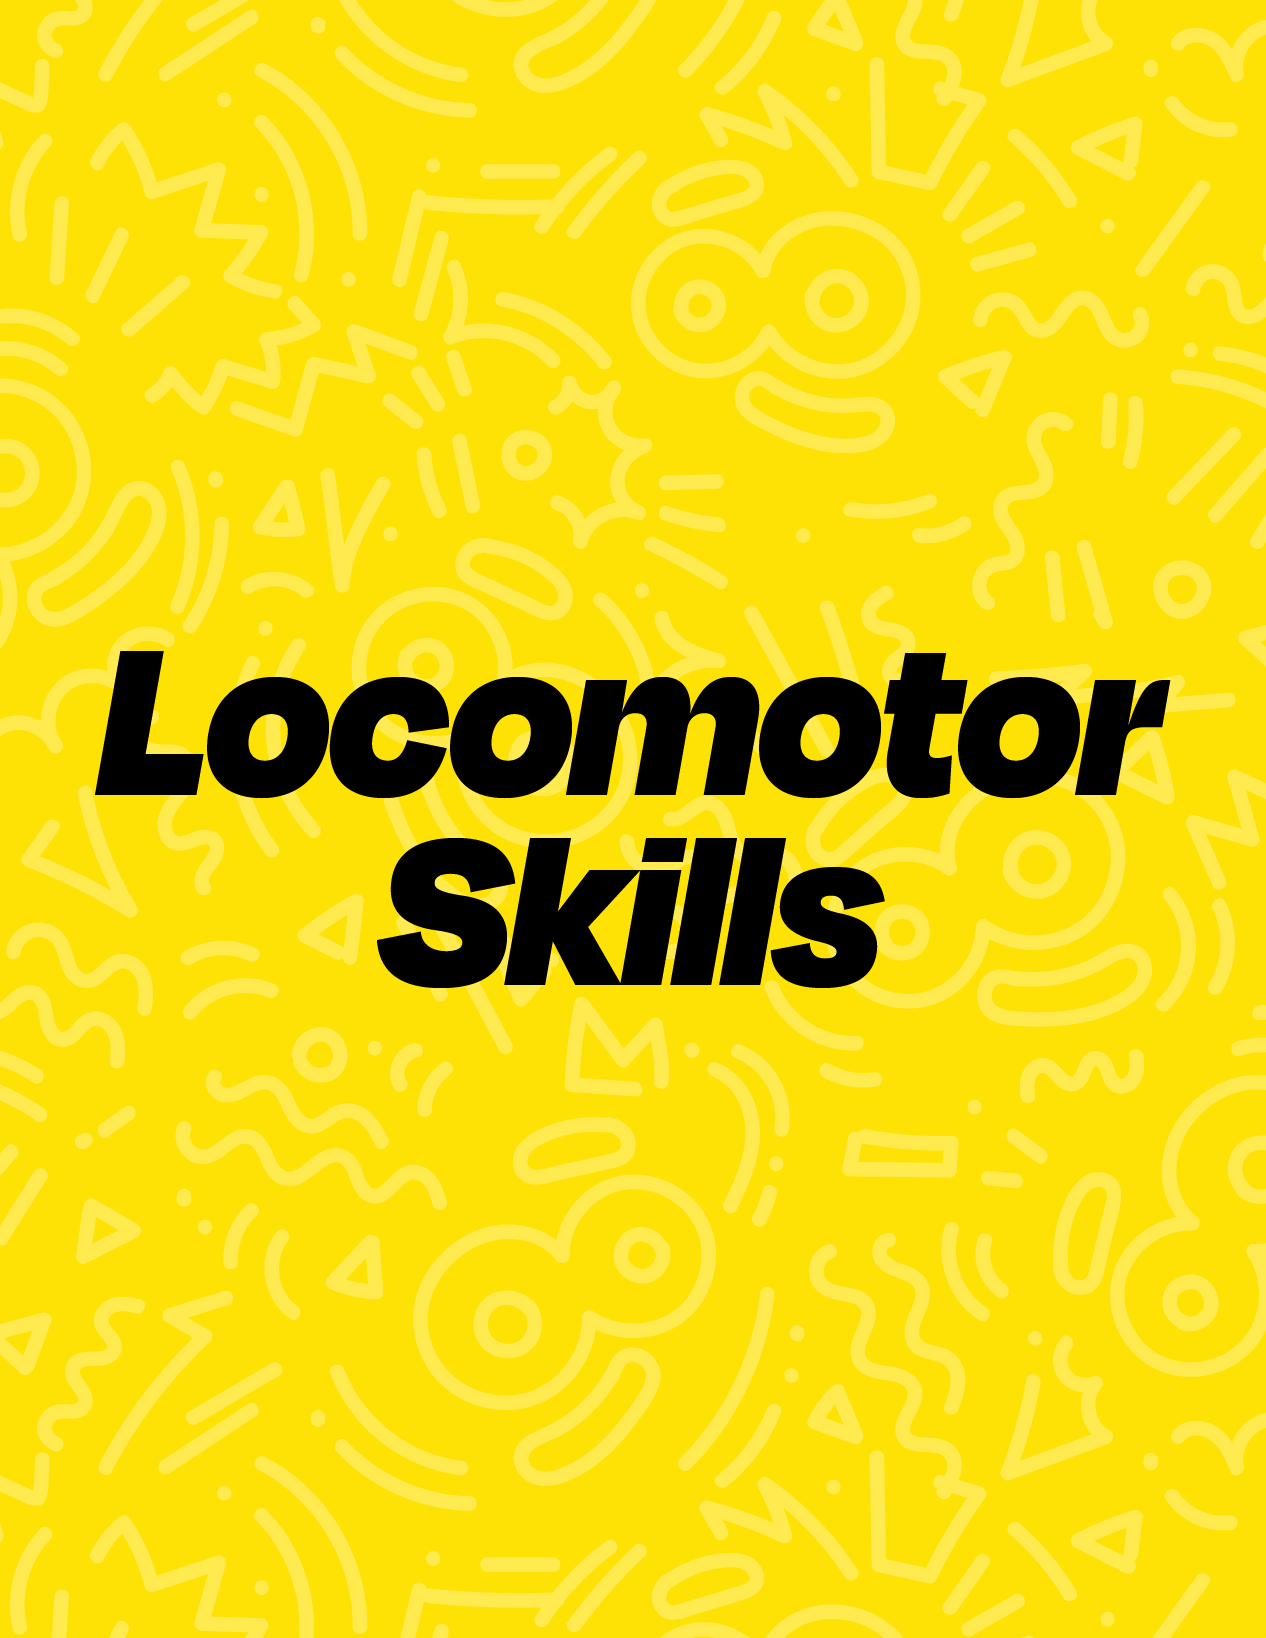 Locomotor Skills